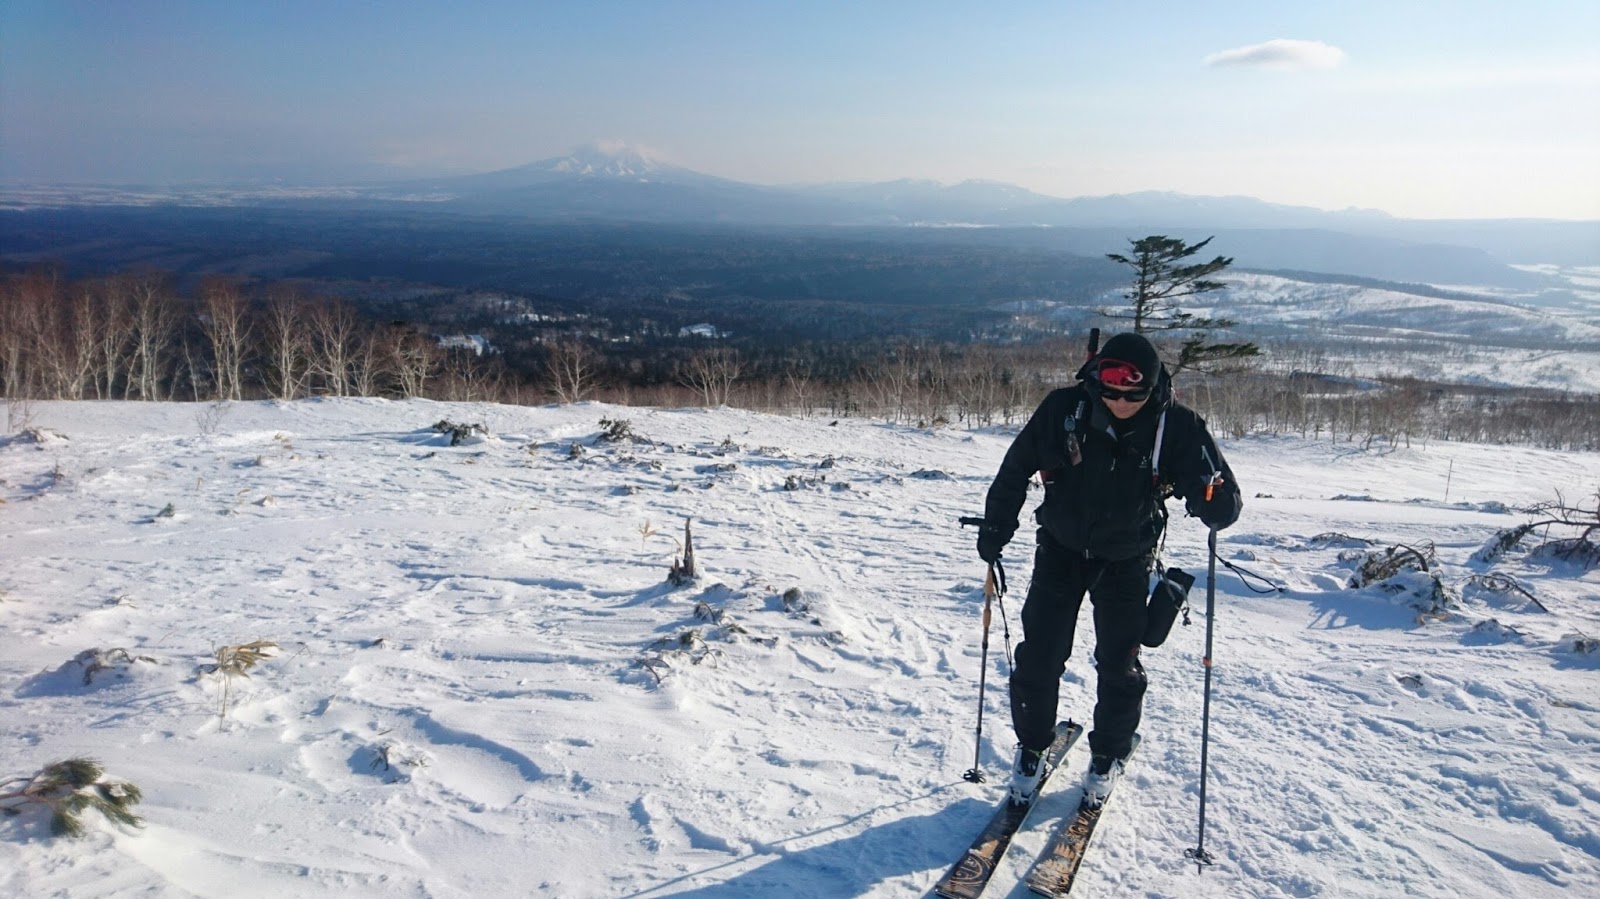 山のまこちゃん登山ブログ: 山スキー入門3.山スキーに必要なギア、装備